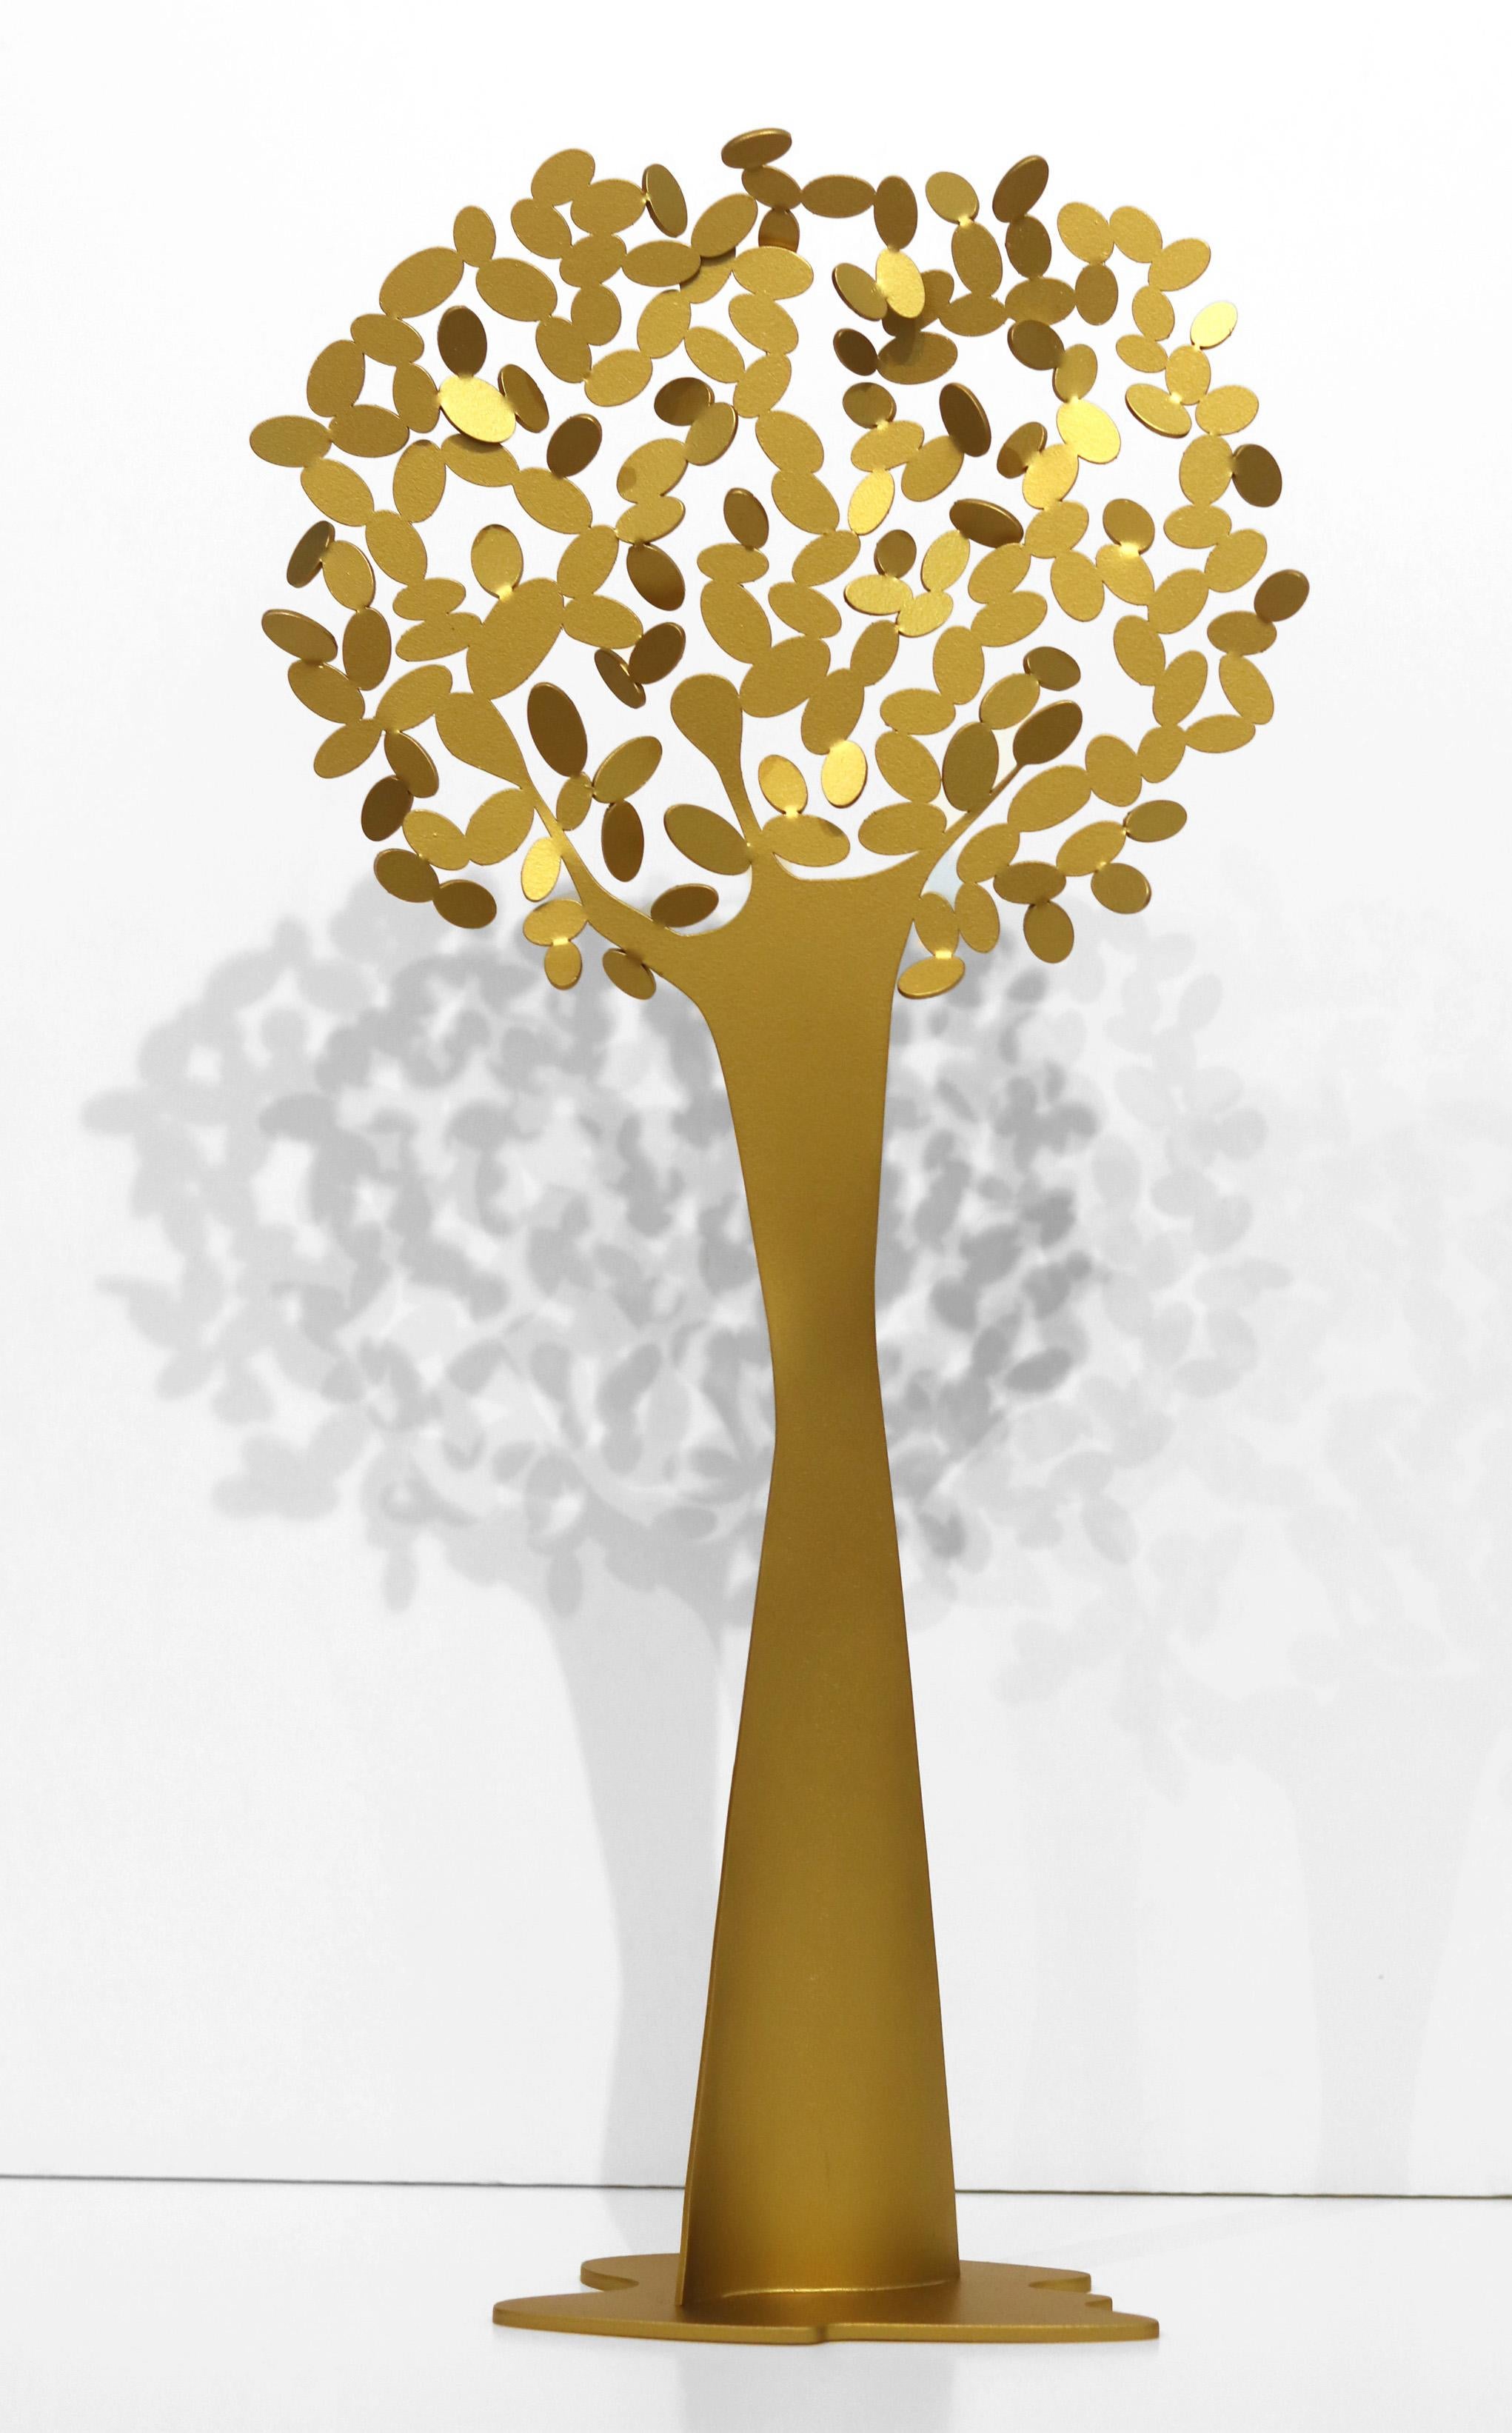 22 inch Tall Original Metal Gold Minimalist Tree Sculpture "Urapan Fraxinus" 